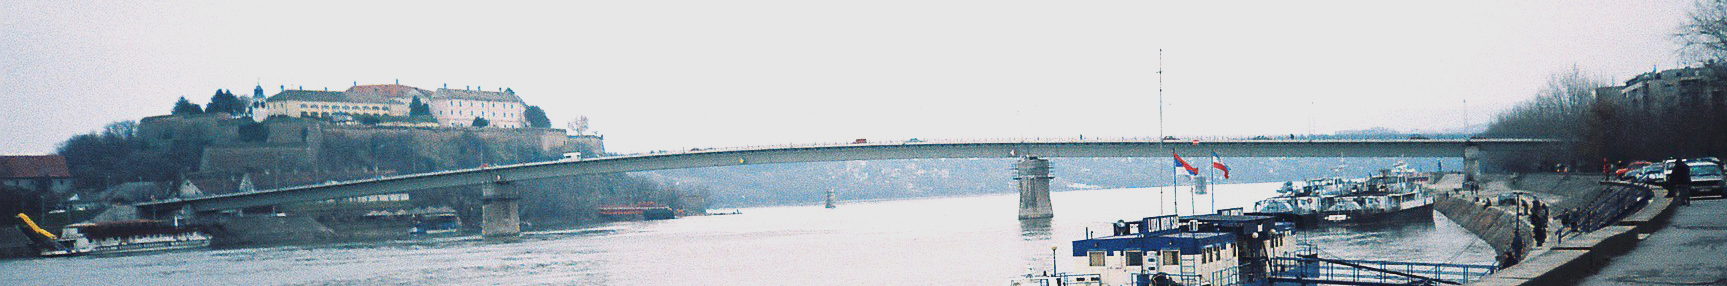 諾維薩德多瑙河上的瓦拉丁橋